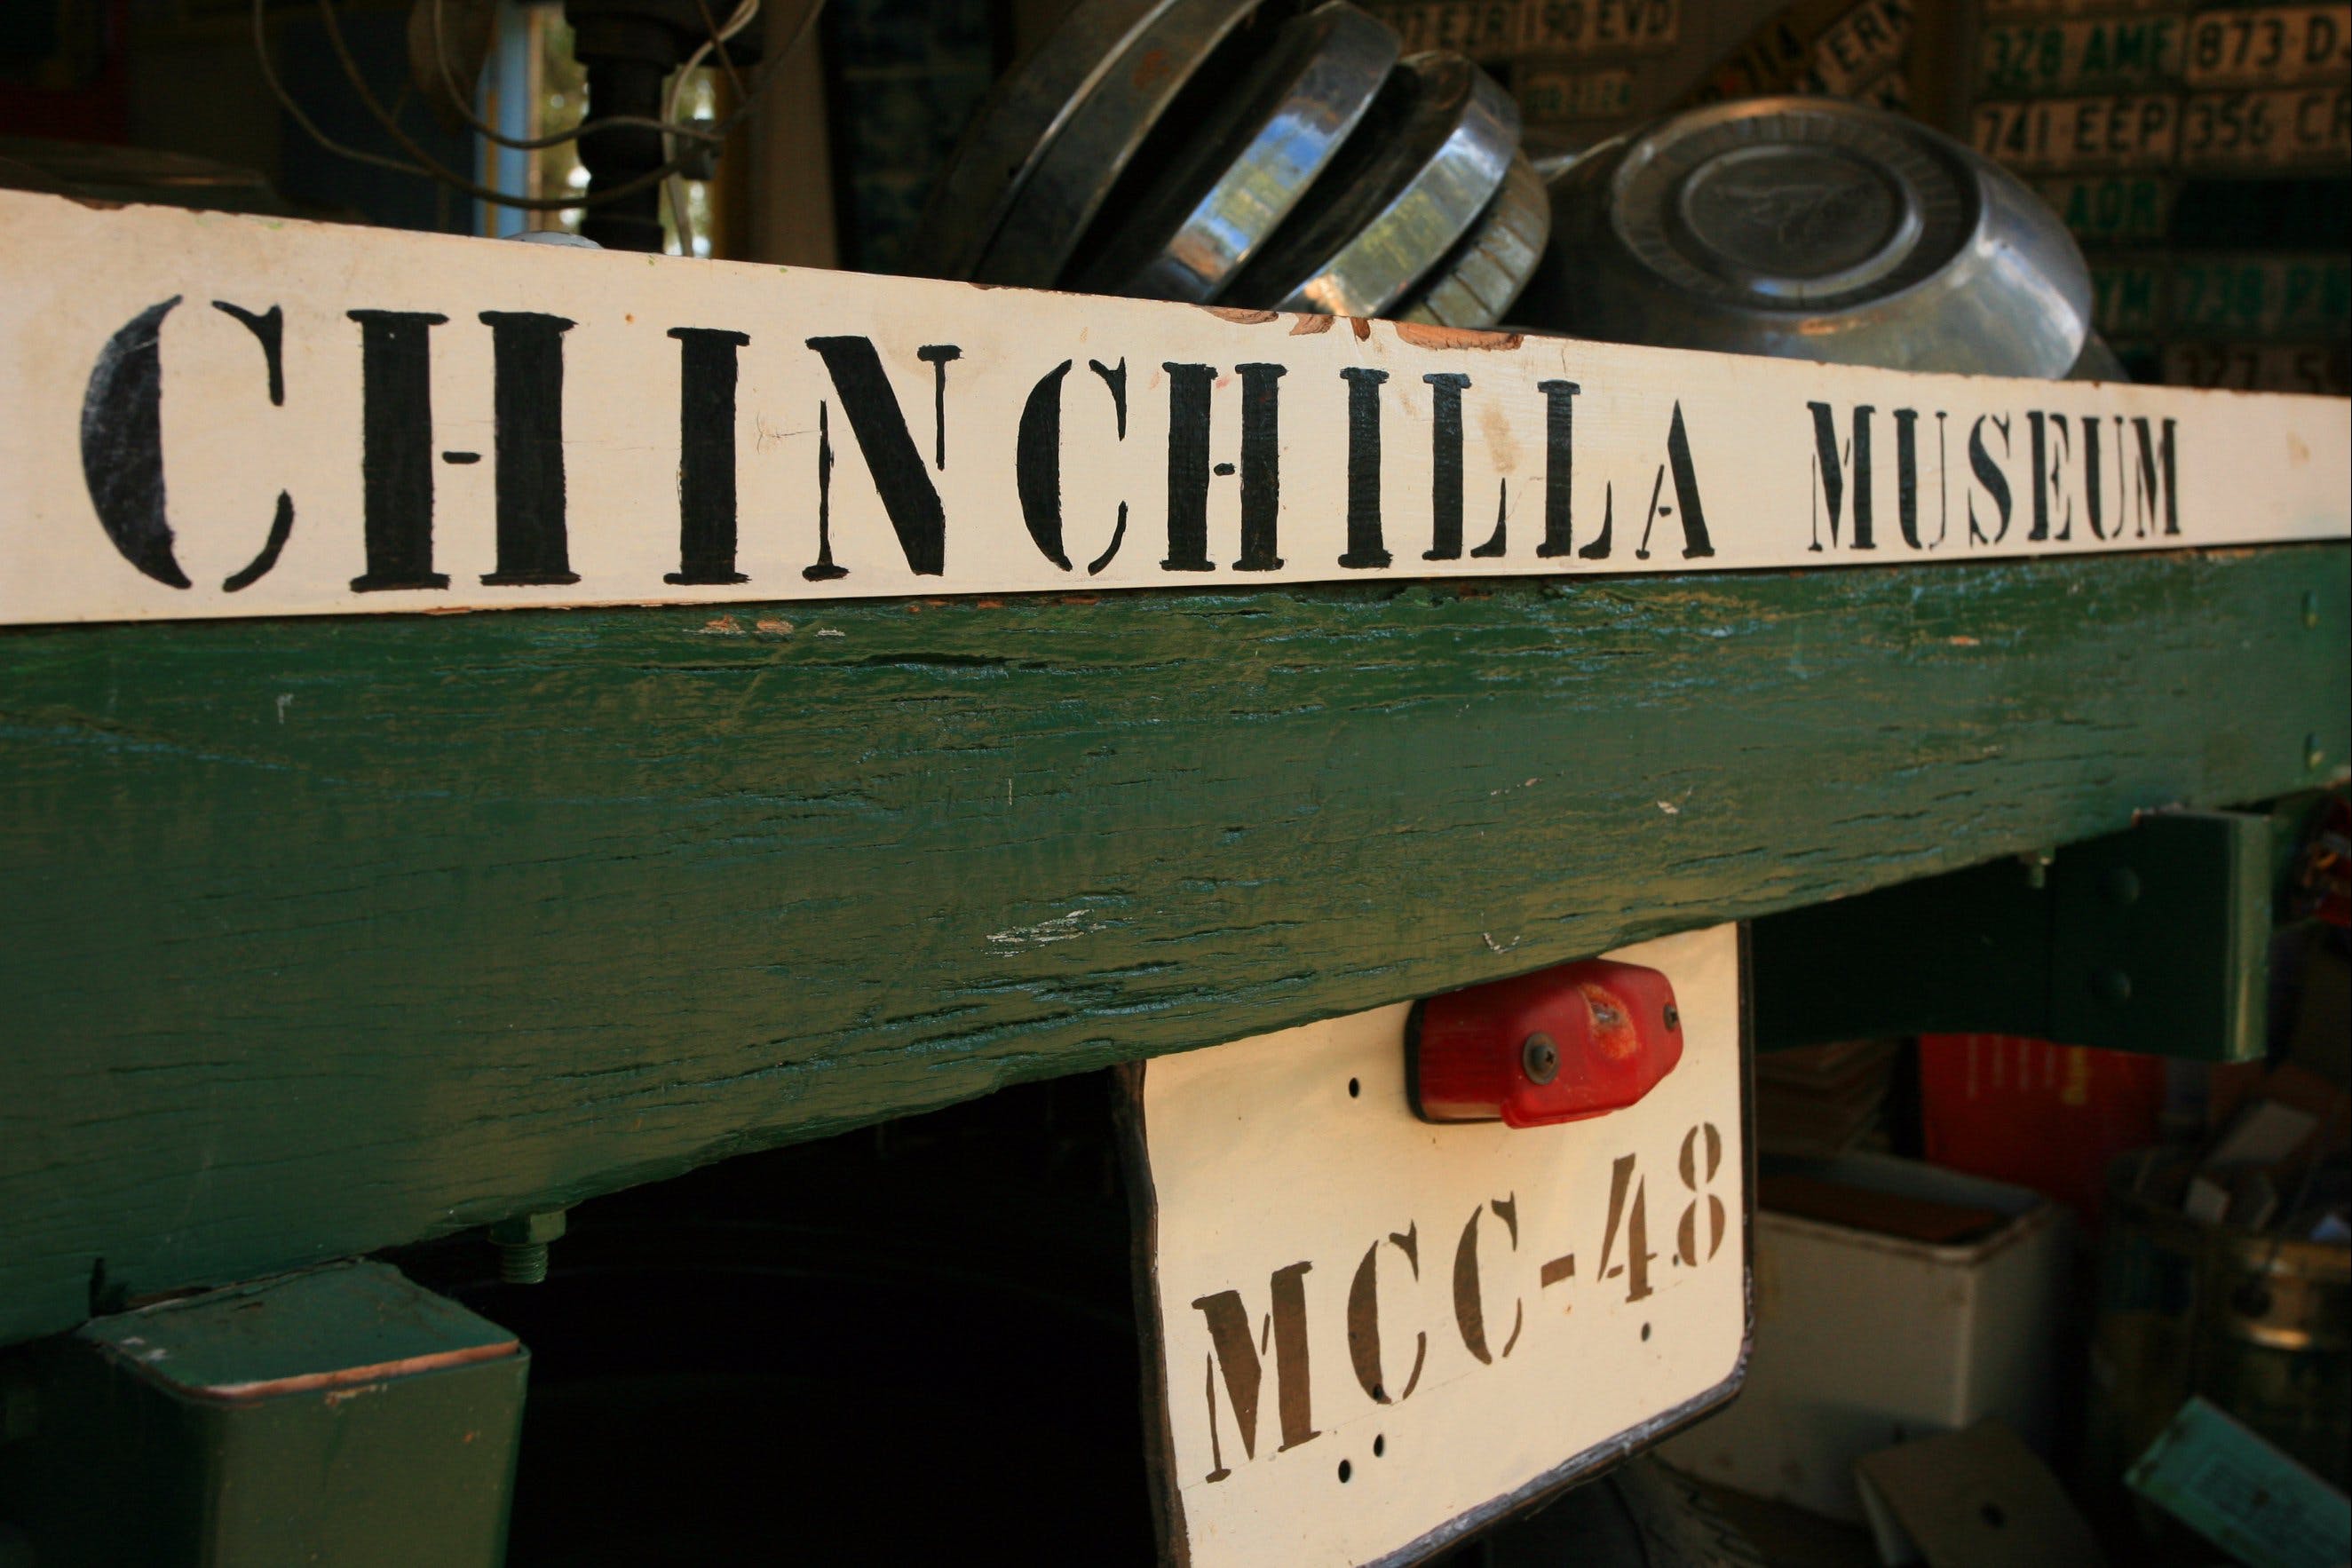 Chinchilla Historical Museum - Accommodation Directory